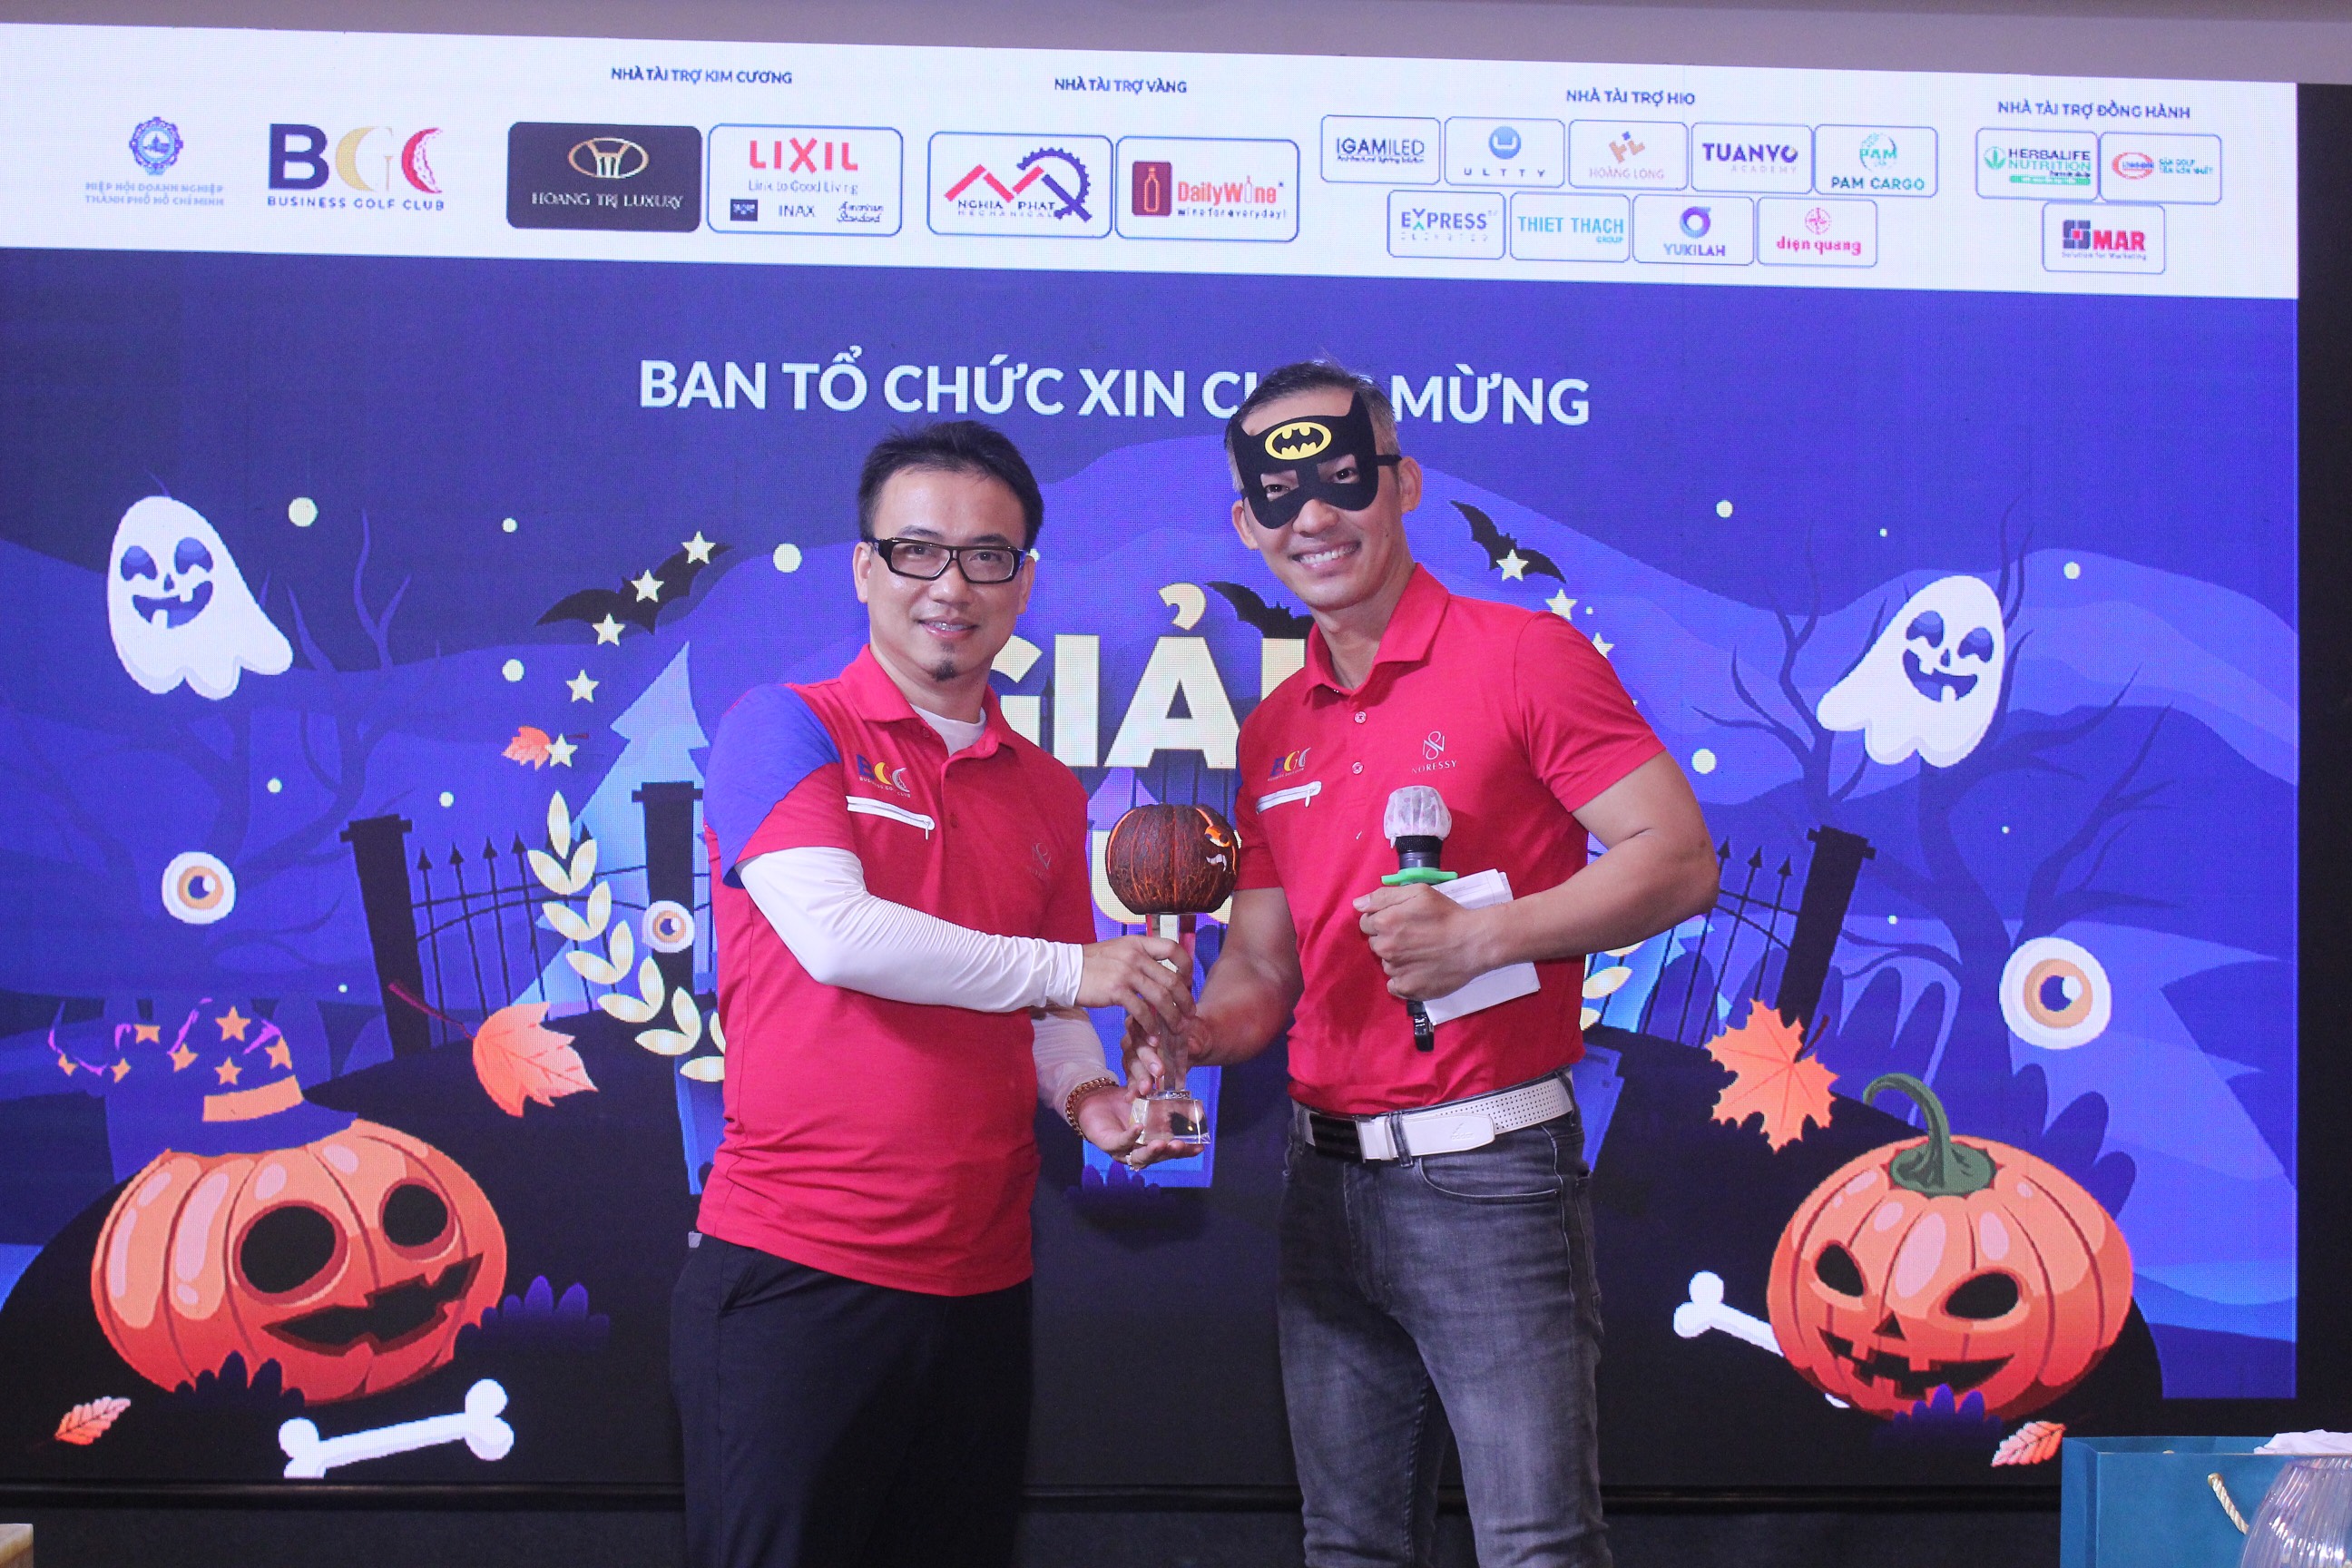 Golfer Nguyễn Đại Tiến vô địch giải “Golf & Connect” chào mừng ngày Halloween của BGC Golf Club